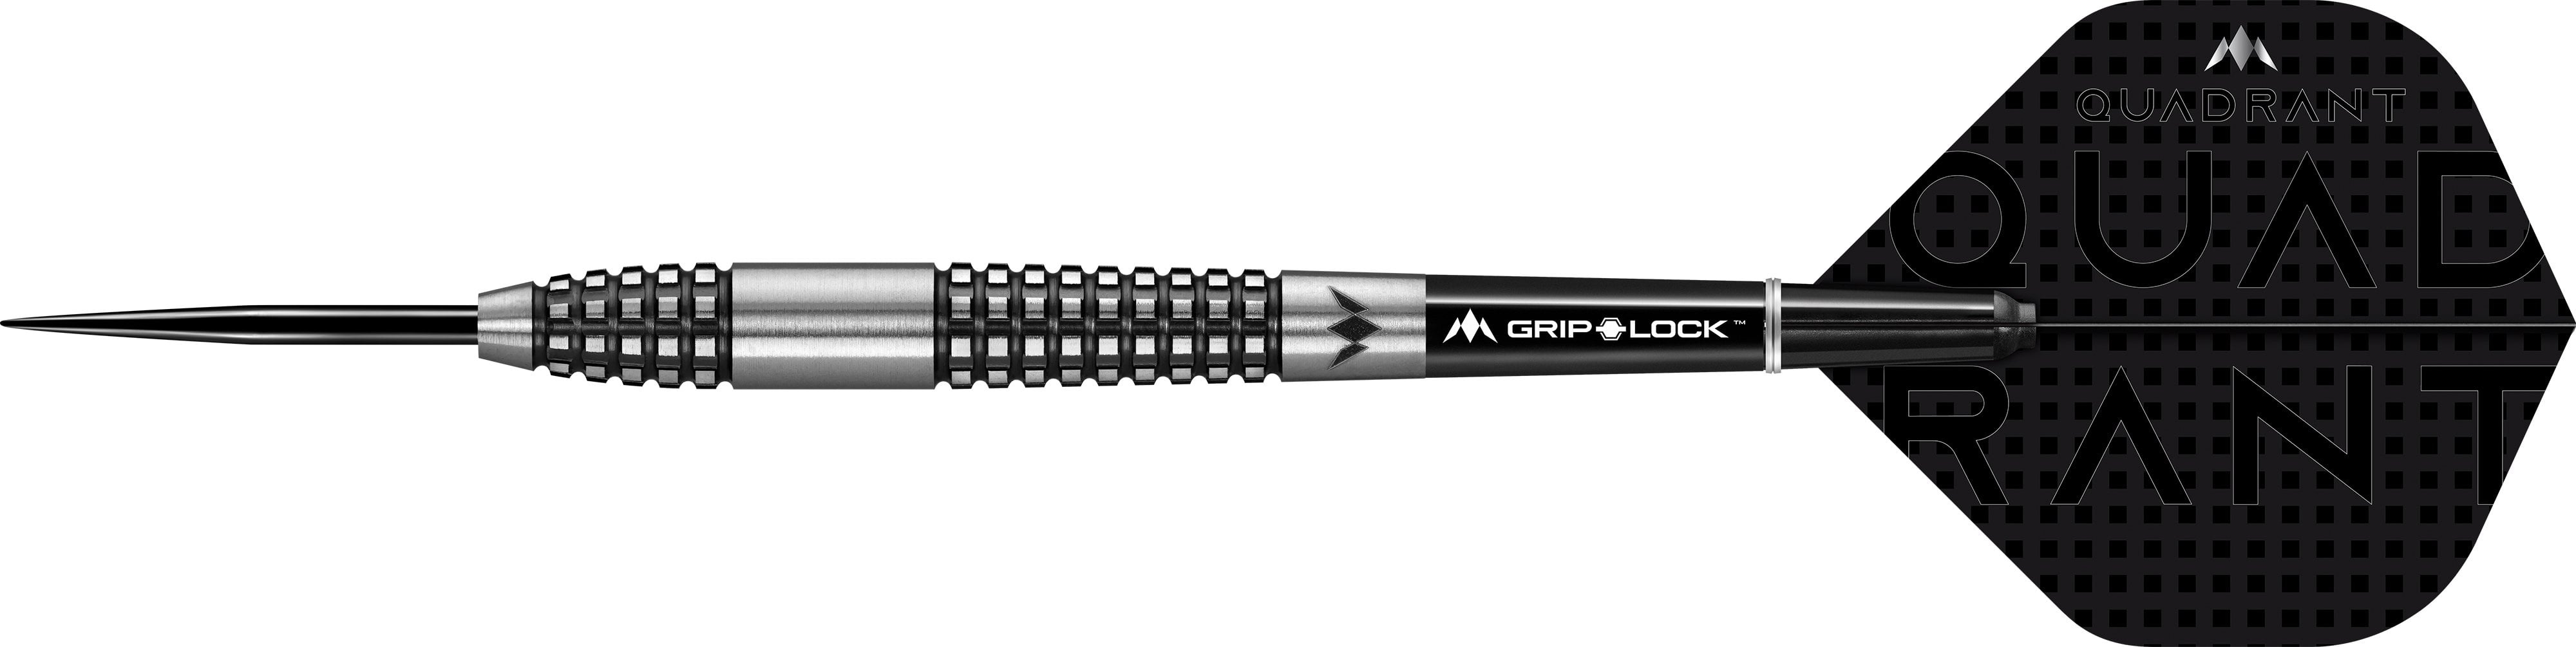 Mission Quadrant Darts - Steel Tip - M2 - Quad Grip